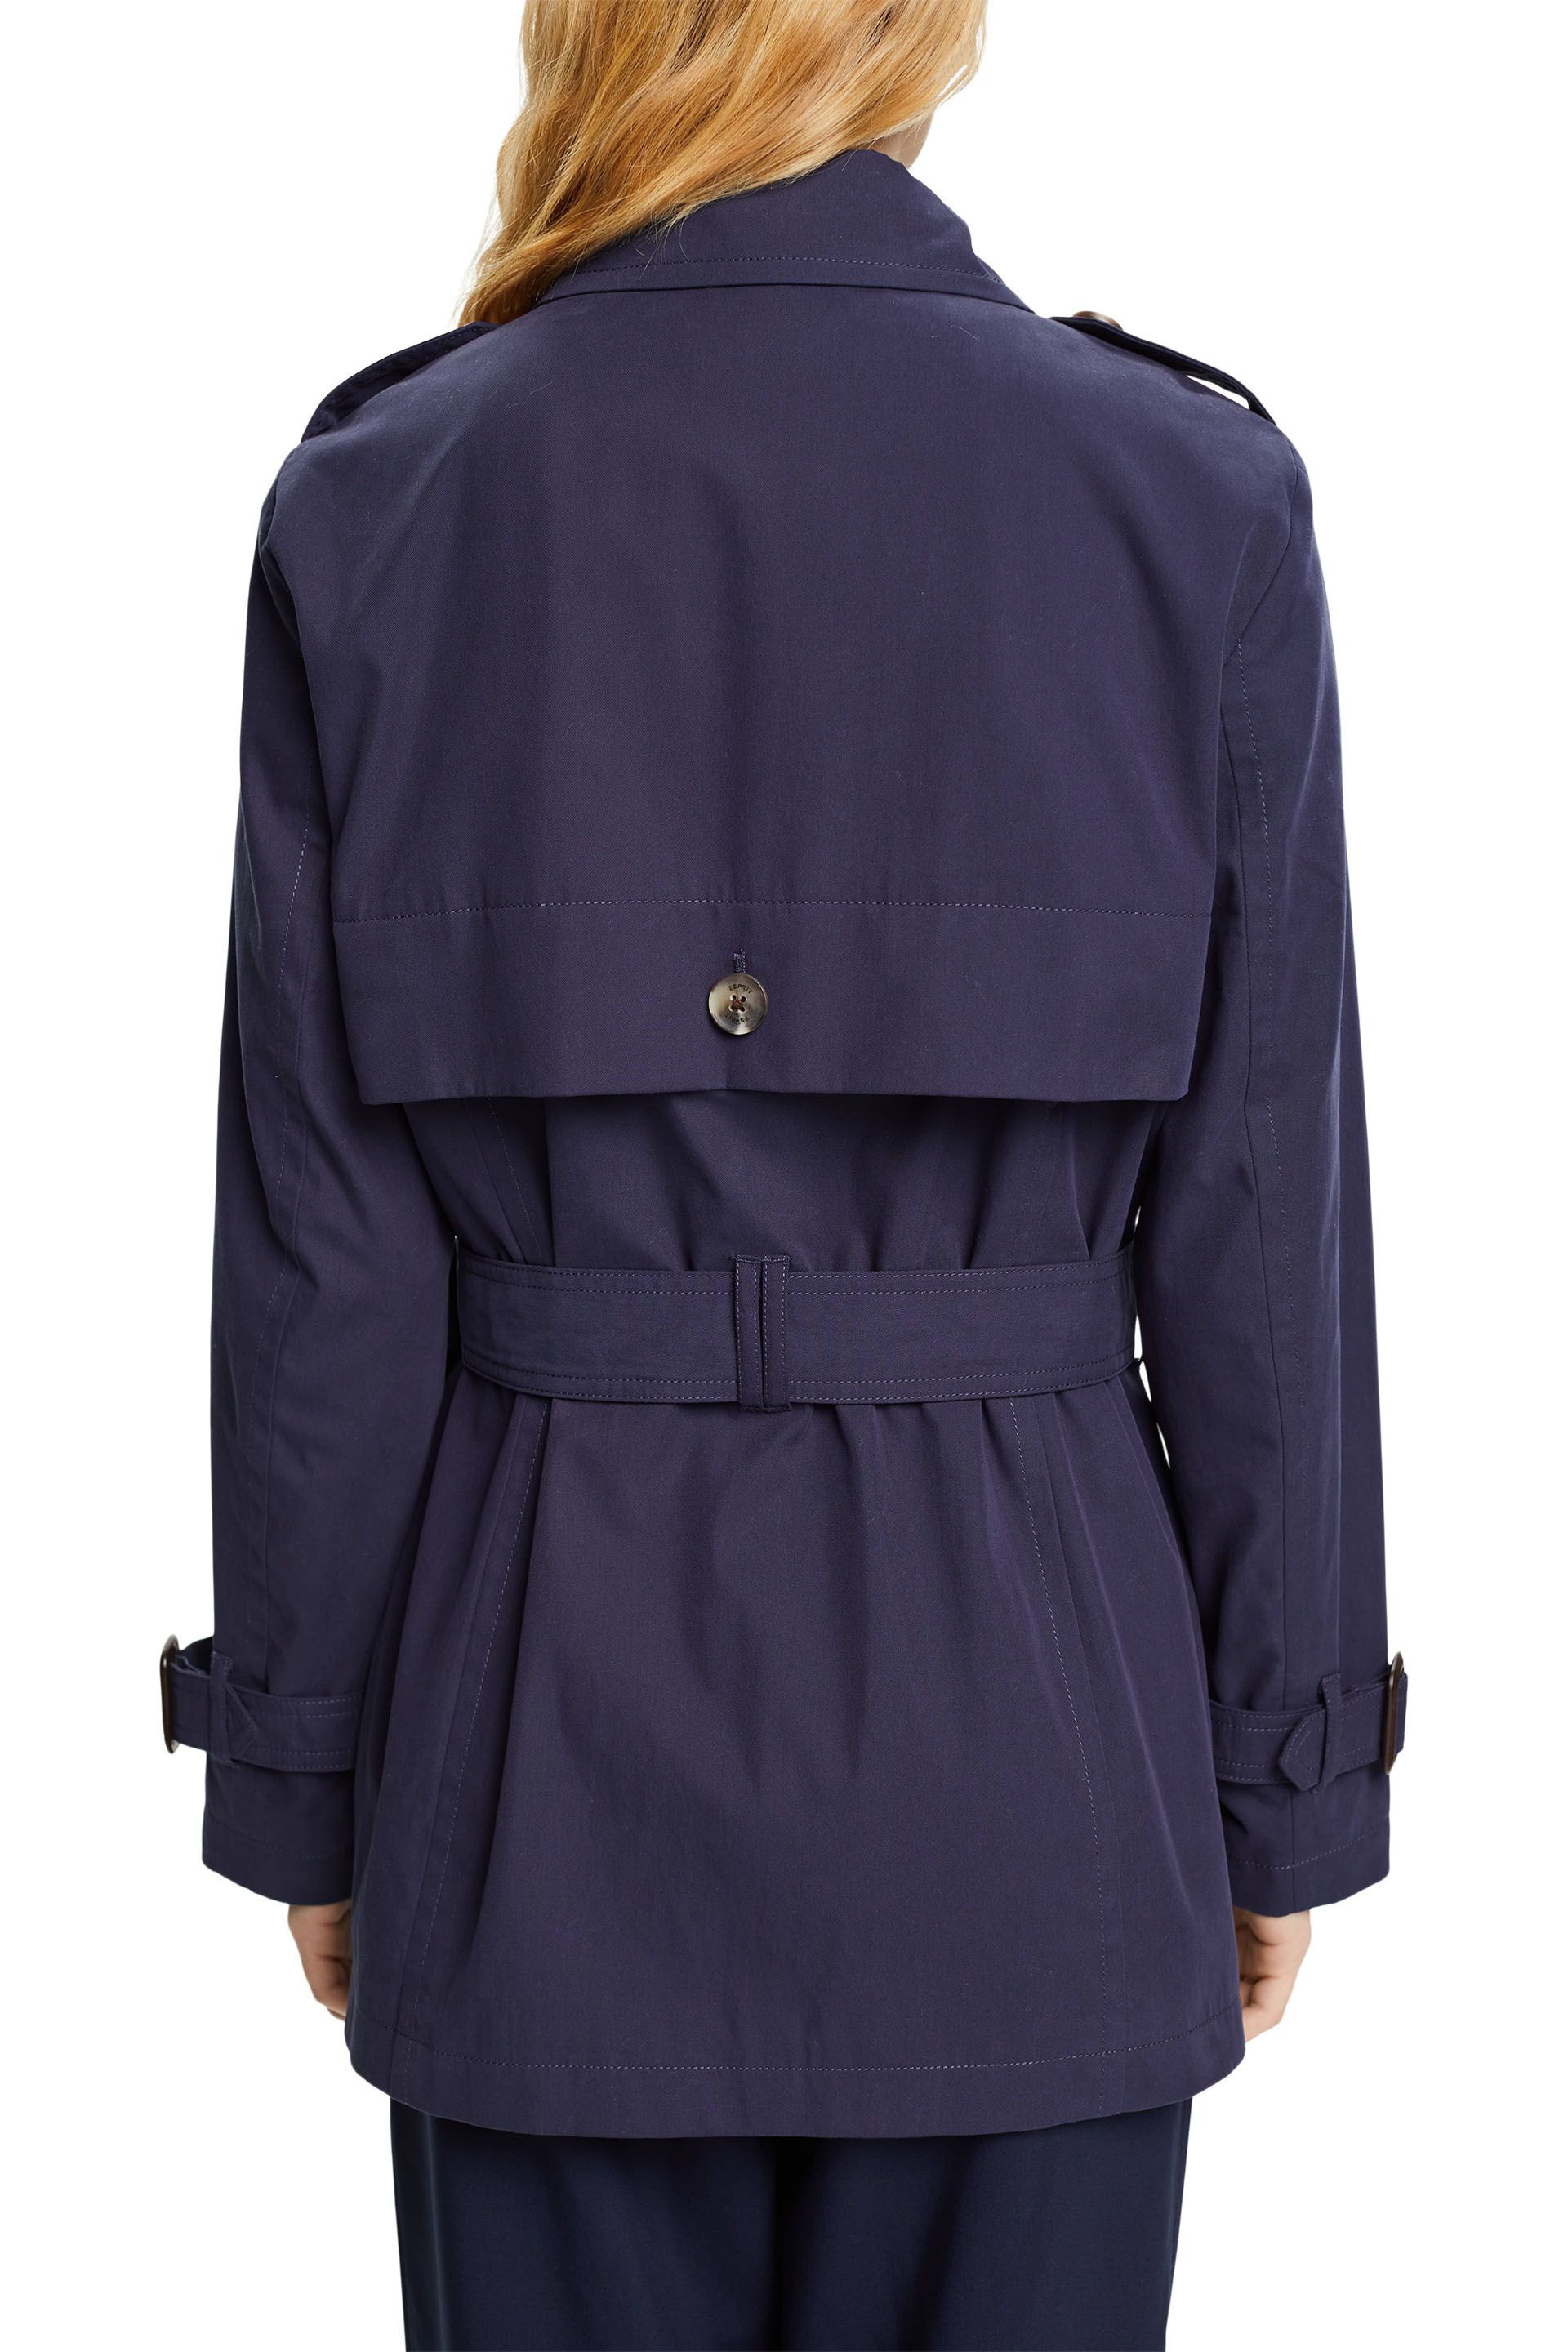 Esprit - Short trench coat with belt, Dark Blue, large image number 2